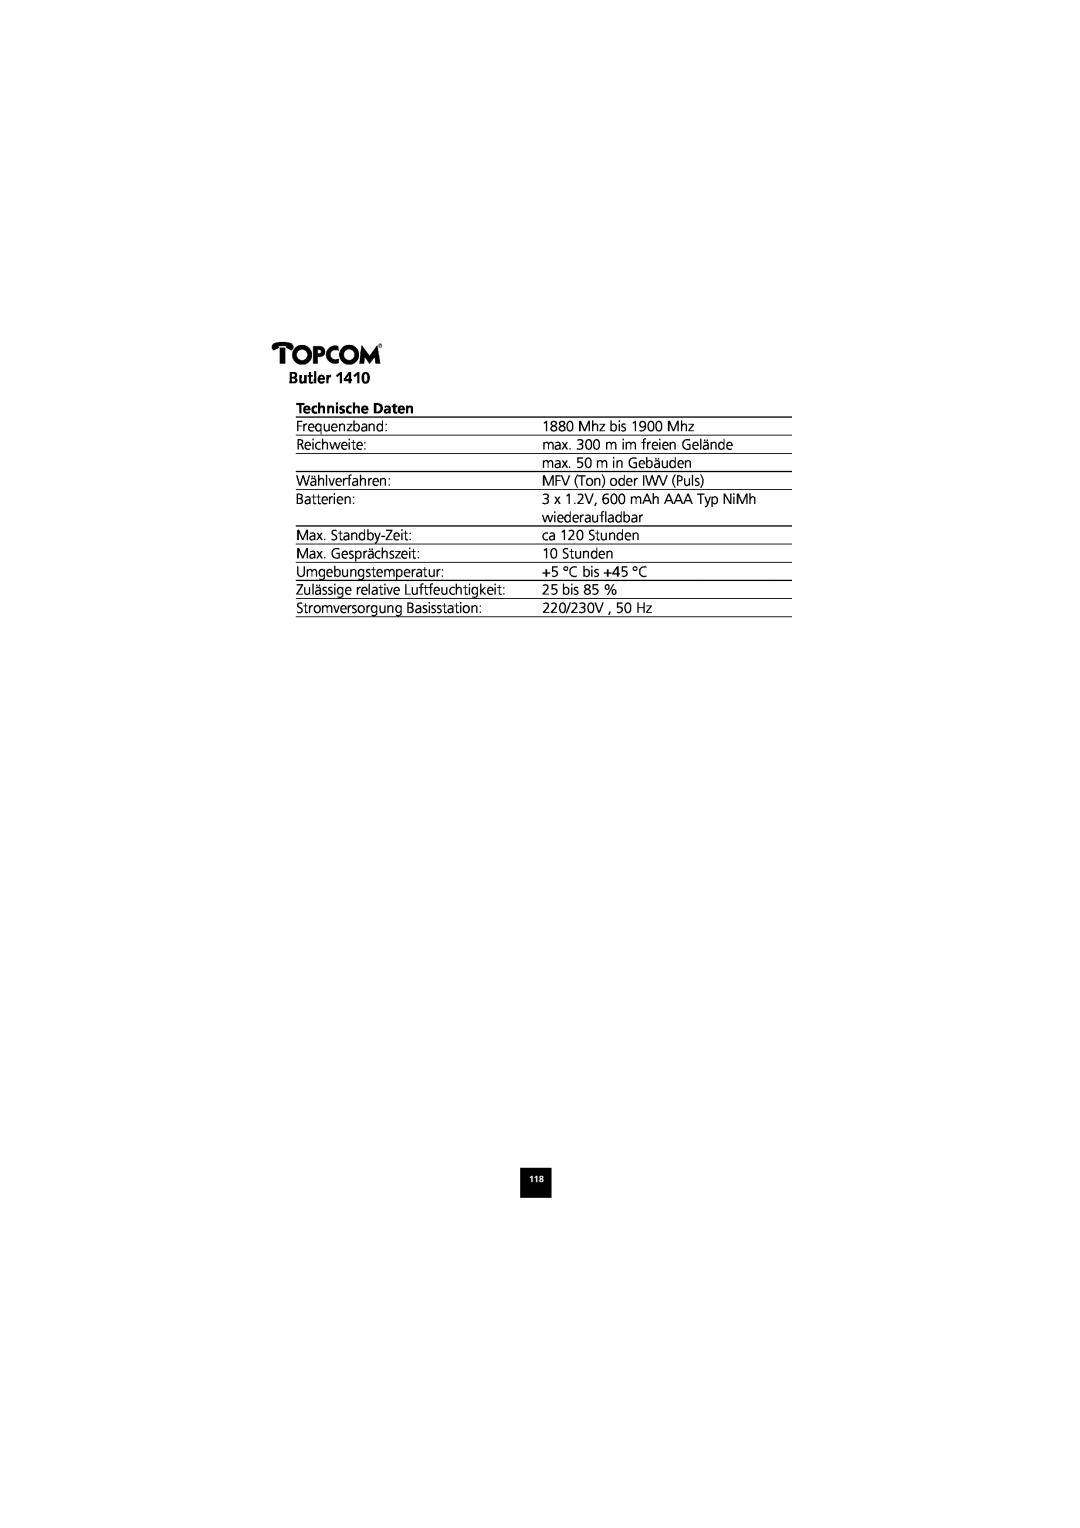 Topcom 1410 manual Technische Daten, Butler 